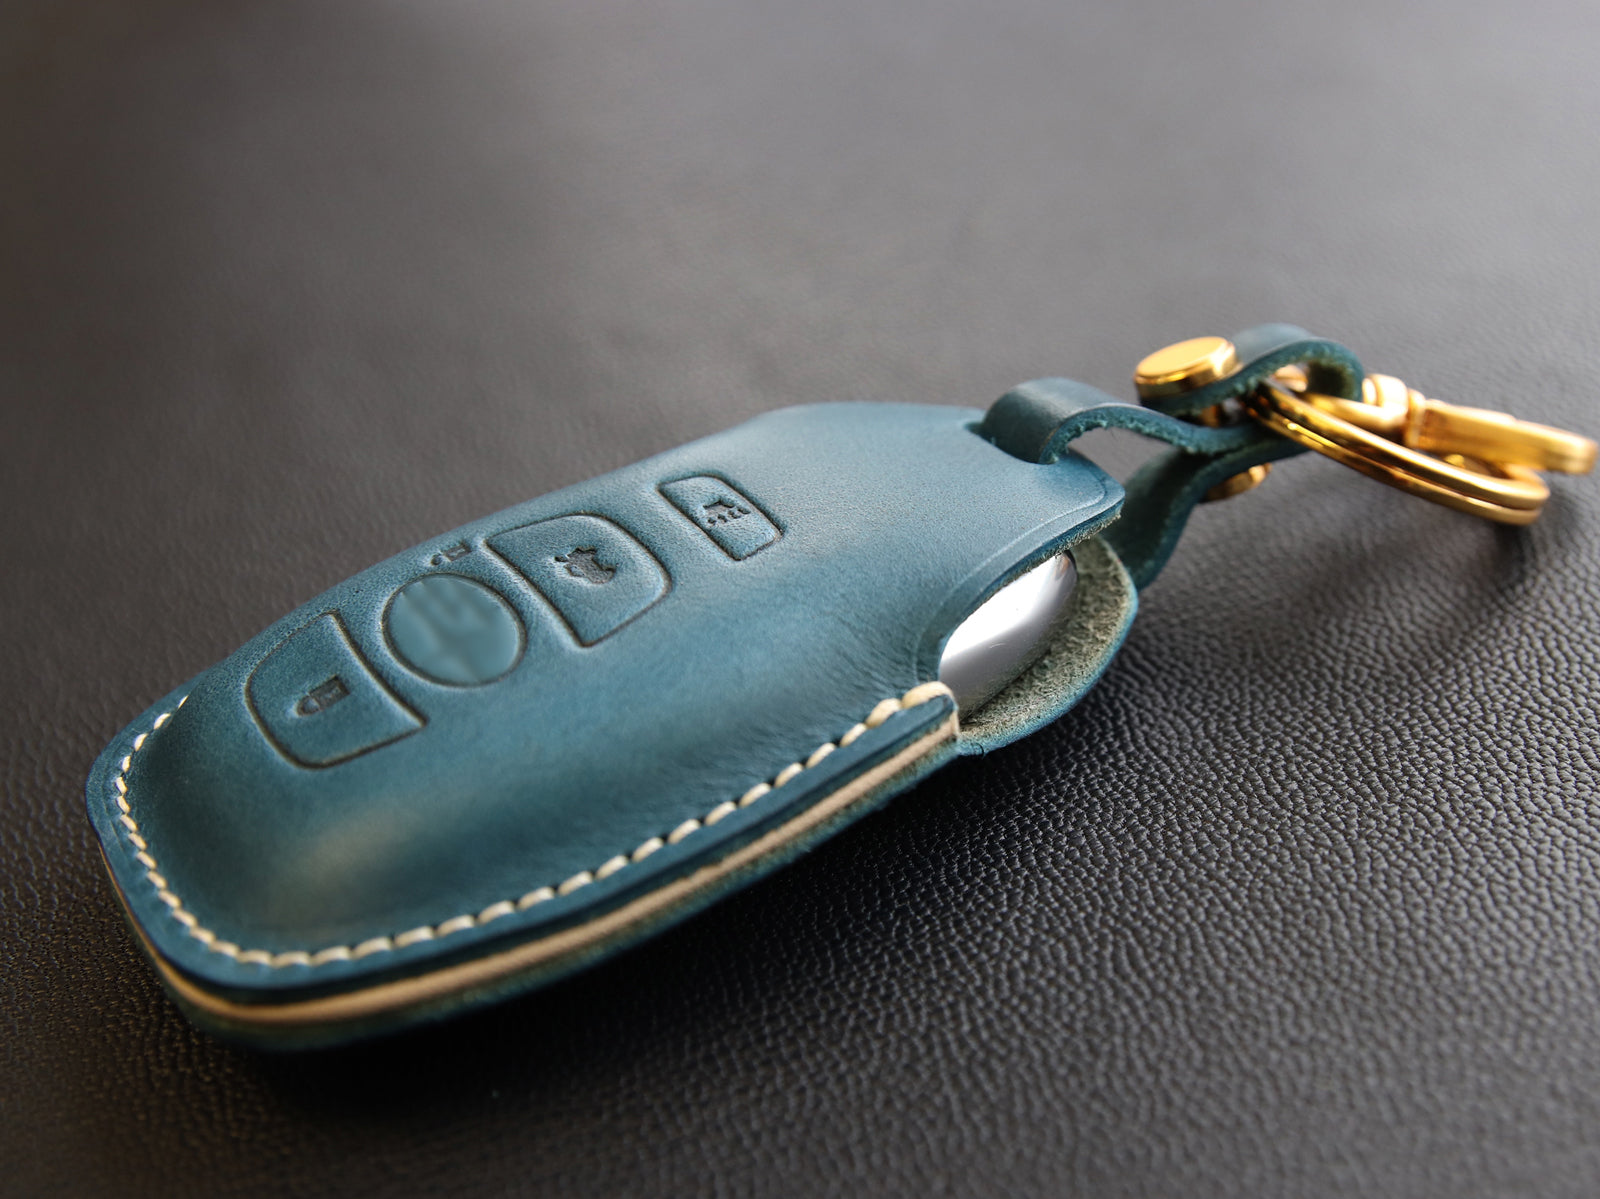 Subaru leather key case - Leather Brut